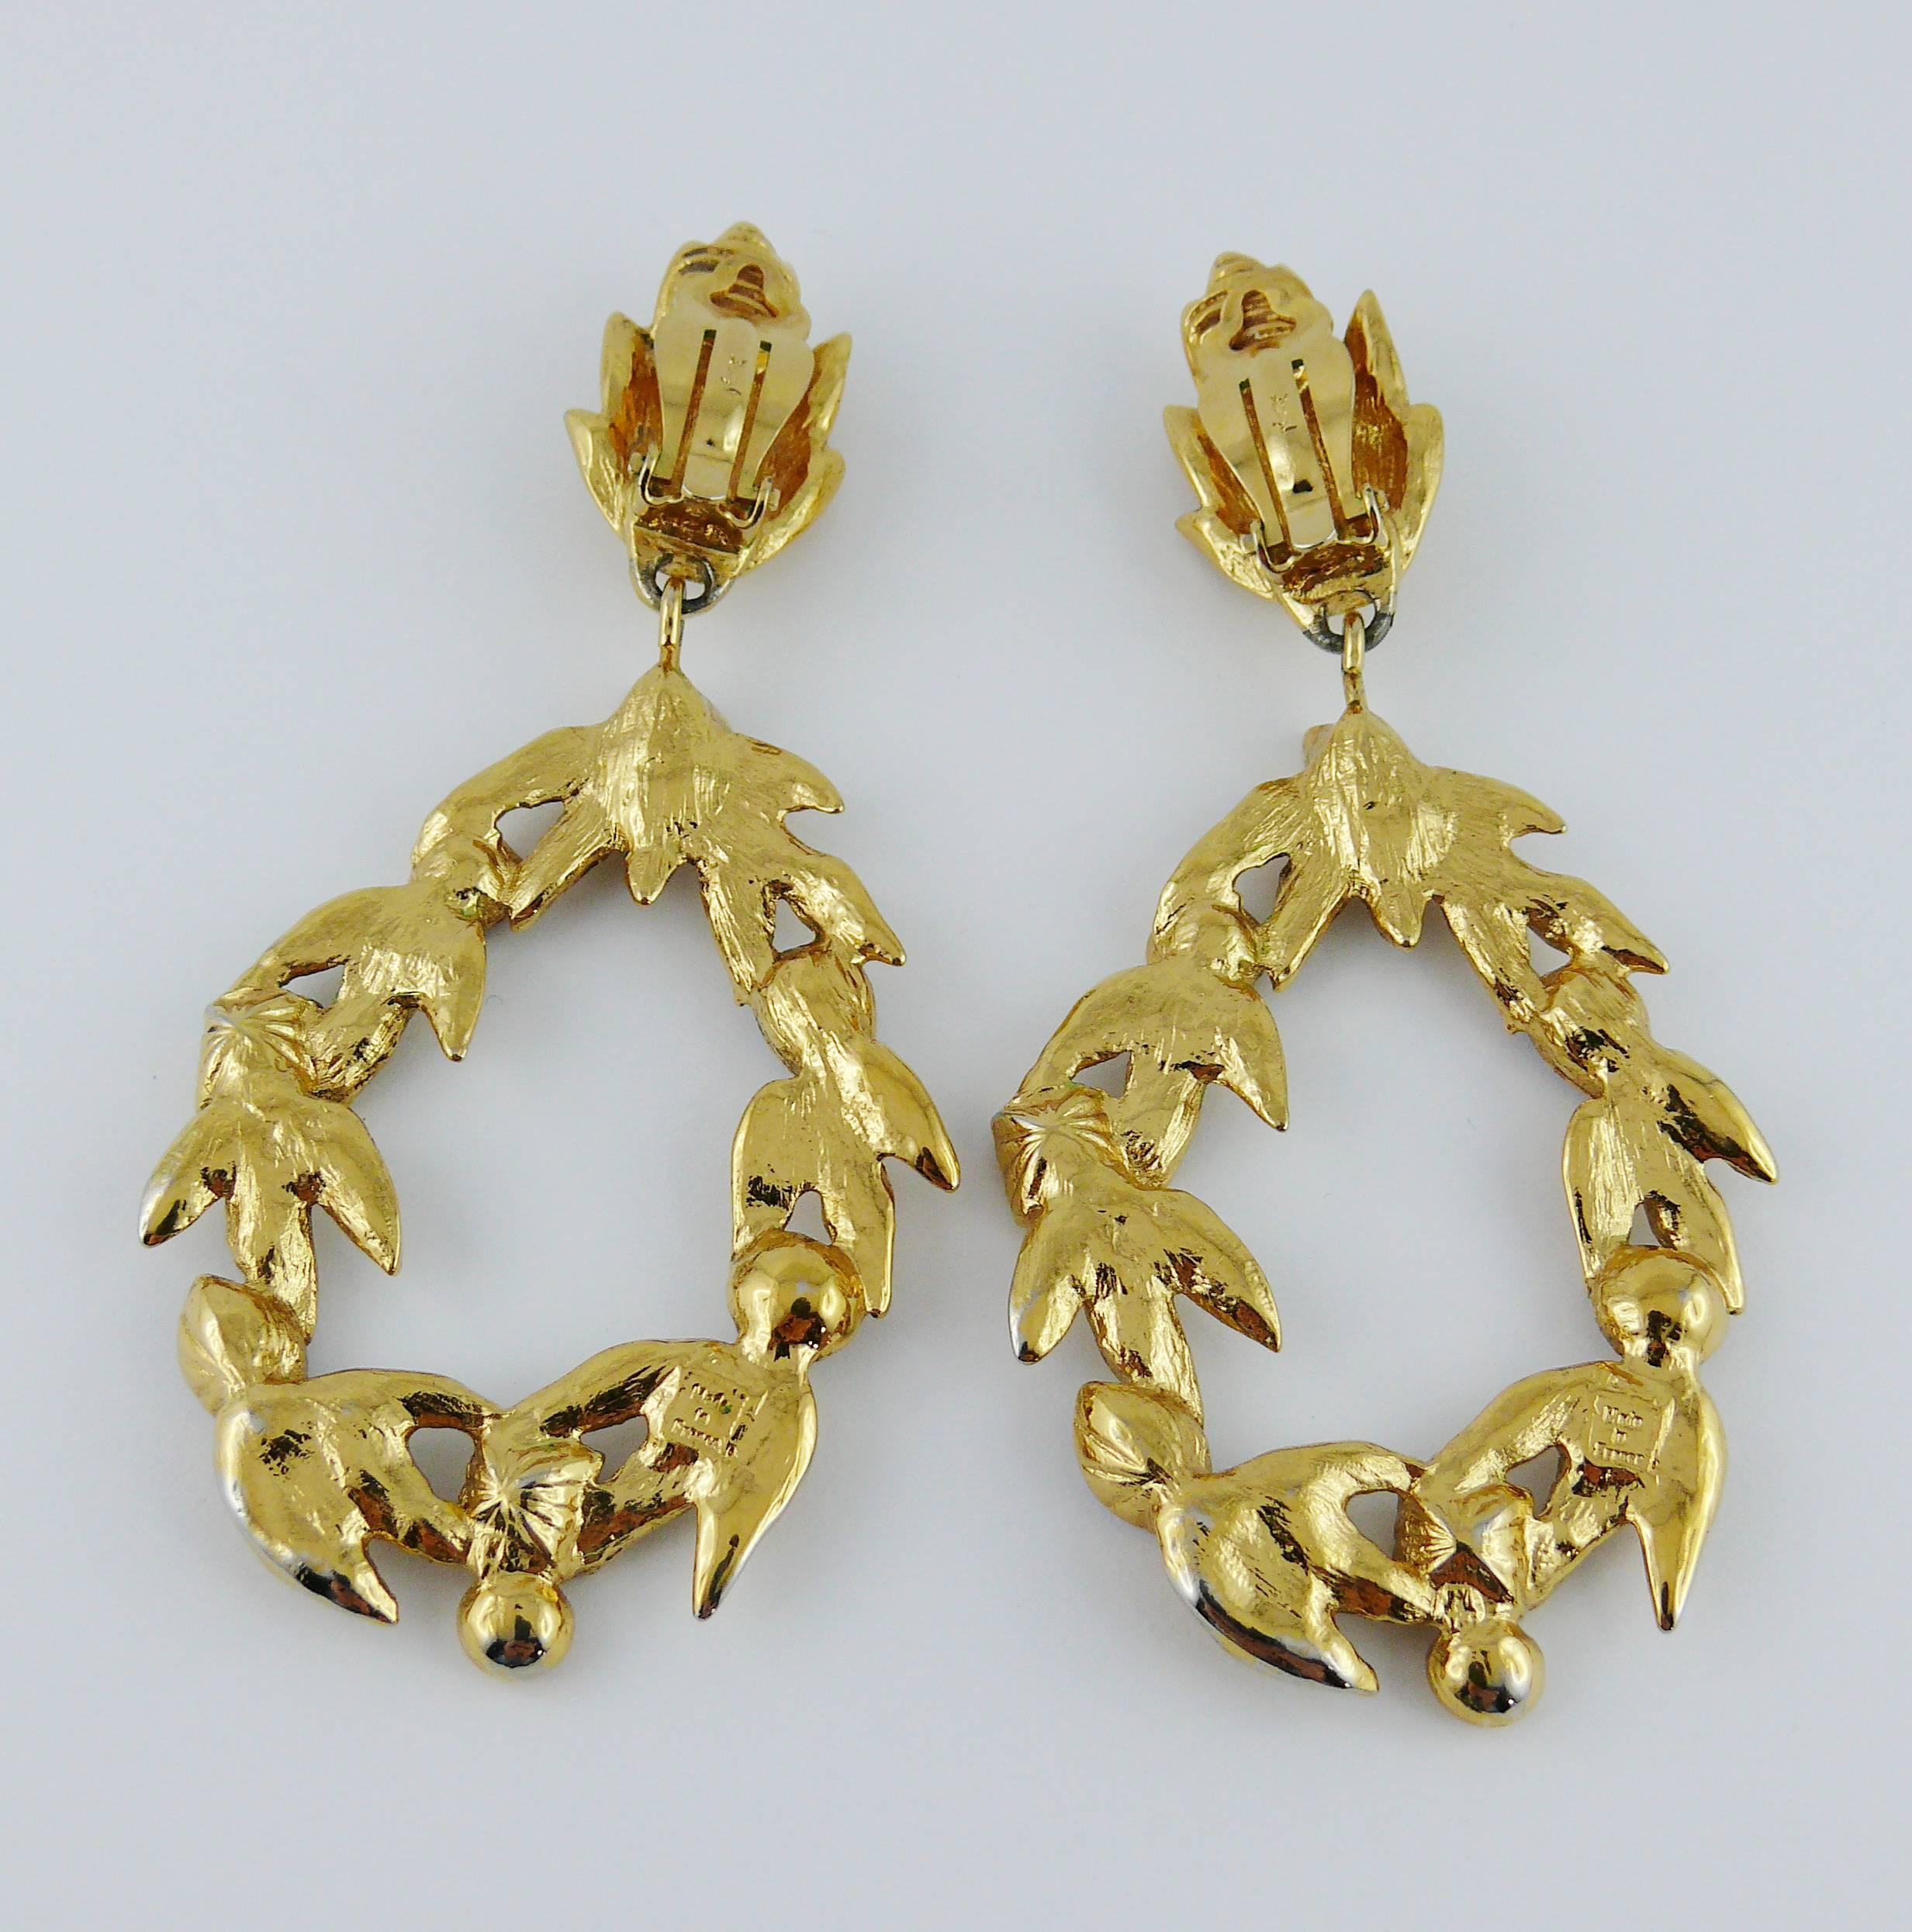 Yves Saint Laurent Vintage Bejeweled Laurel Wreath Earrings and Brooch Set 1